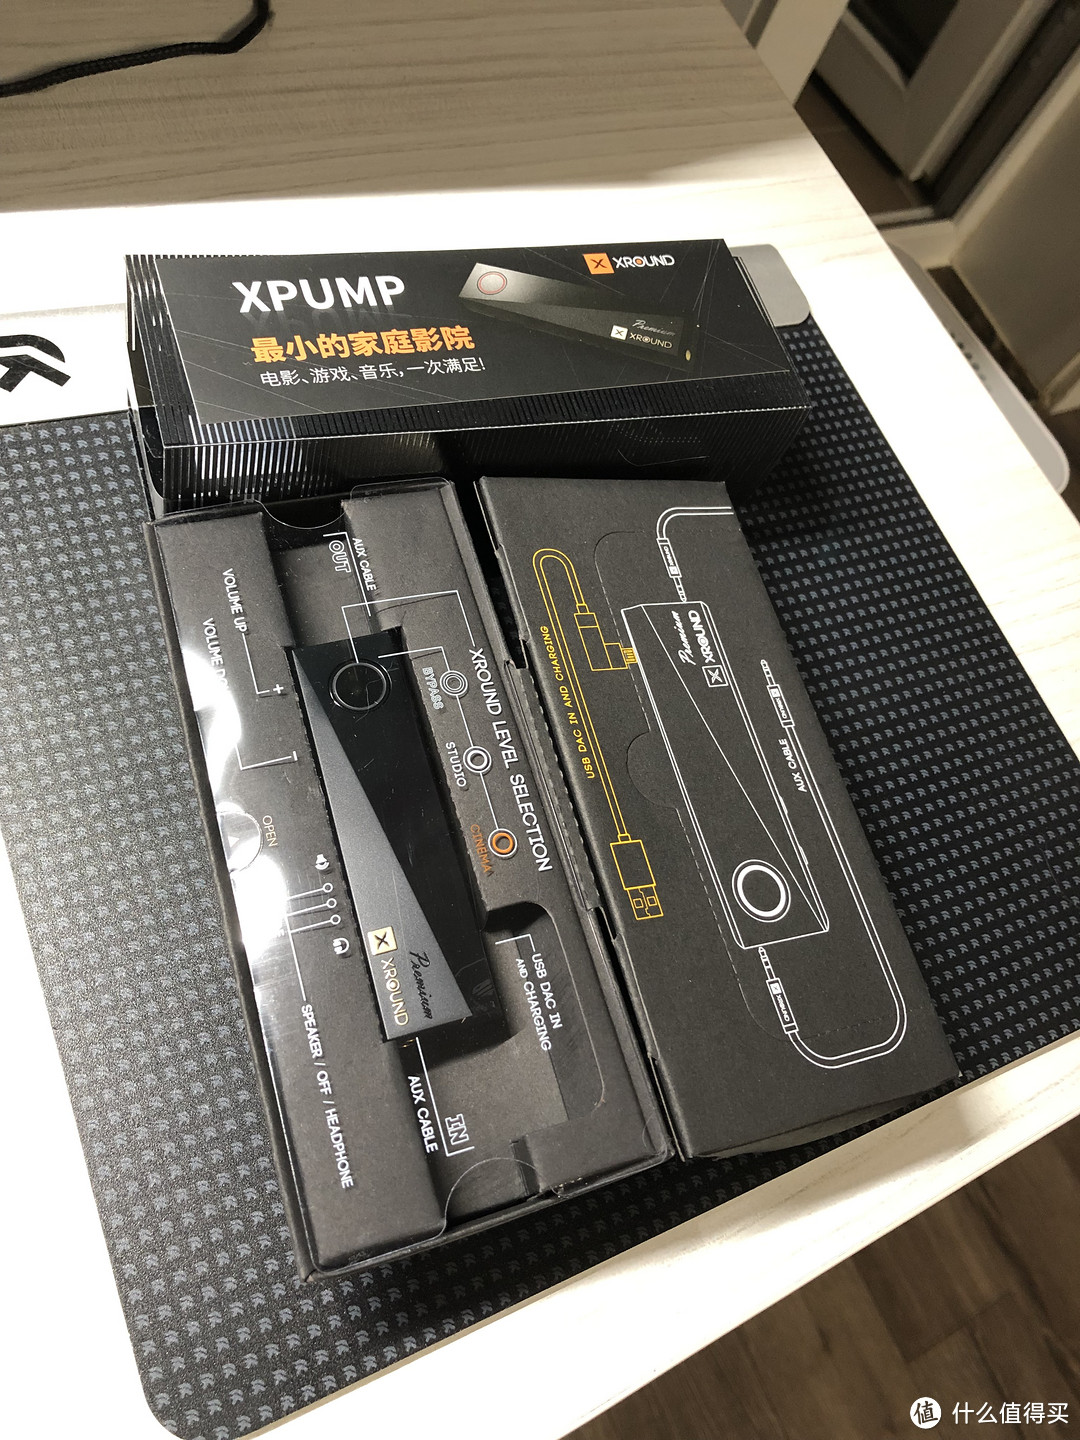 XPUMP 3D智能环绕音效引擎到底是不是一个“玄学”产品？